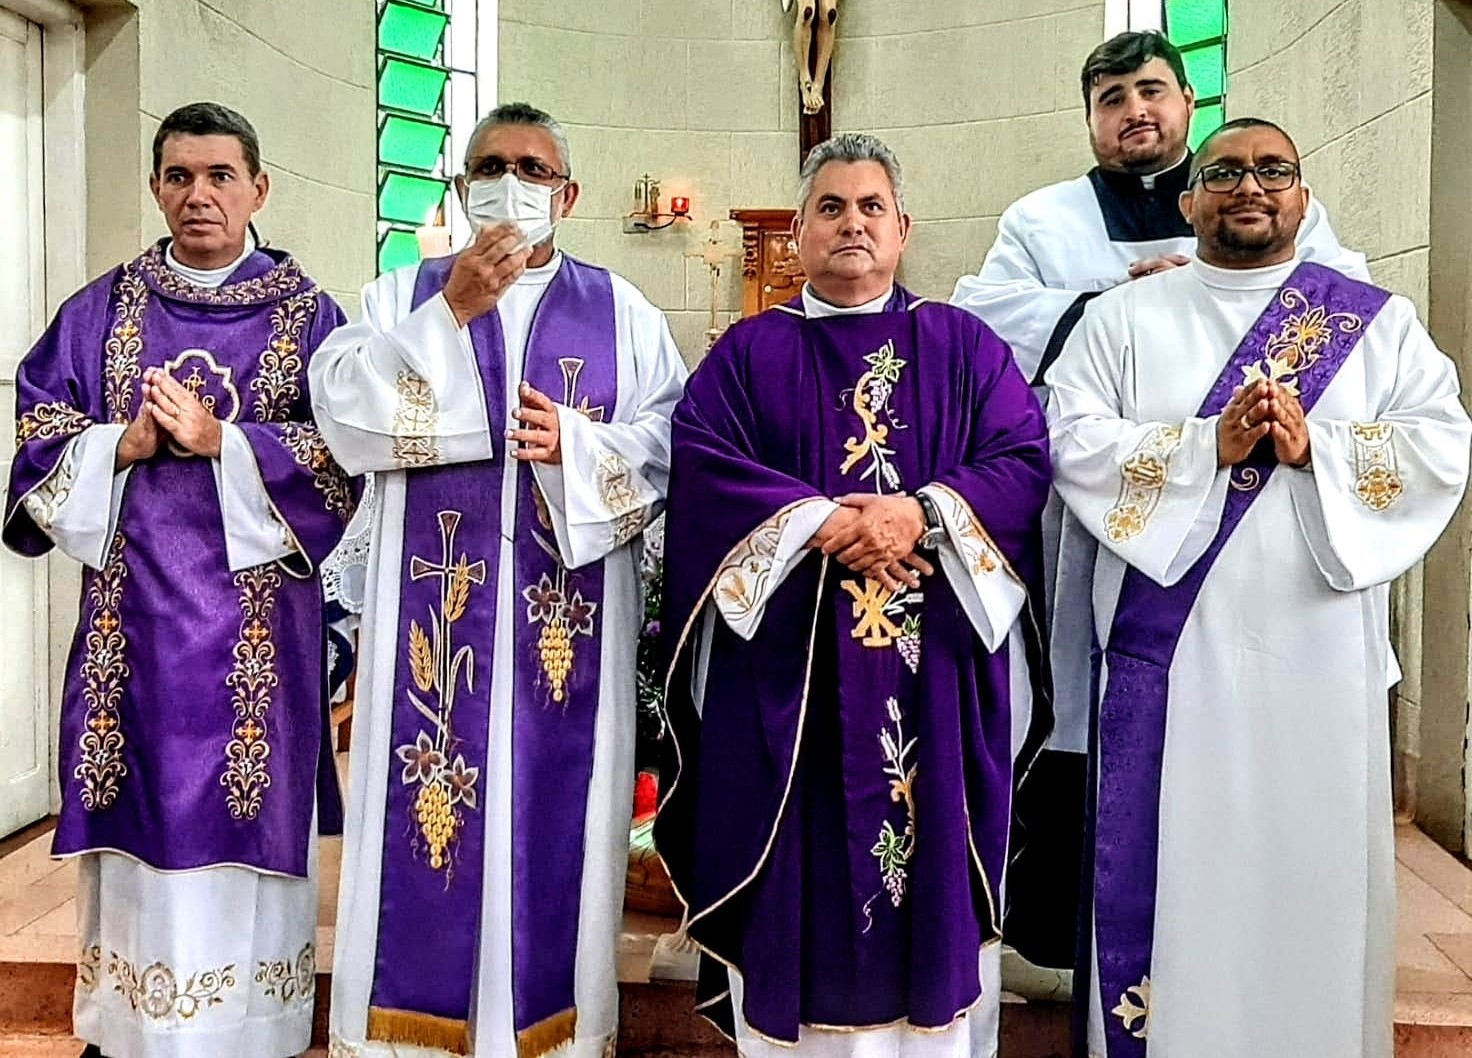 Padres presentes na missa da última semana de fevereiro